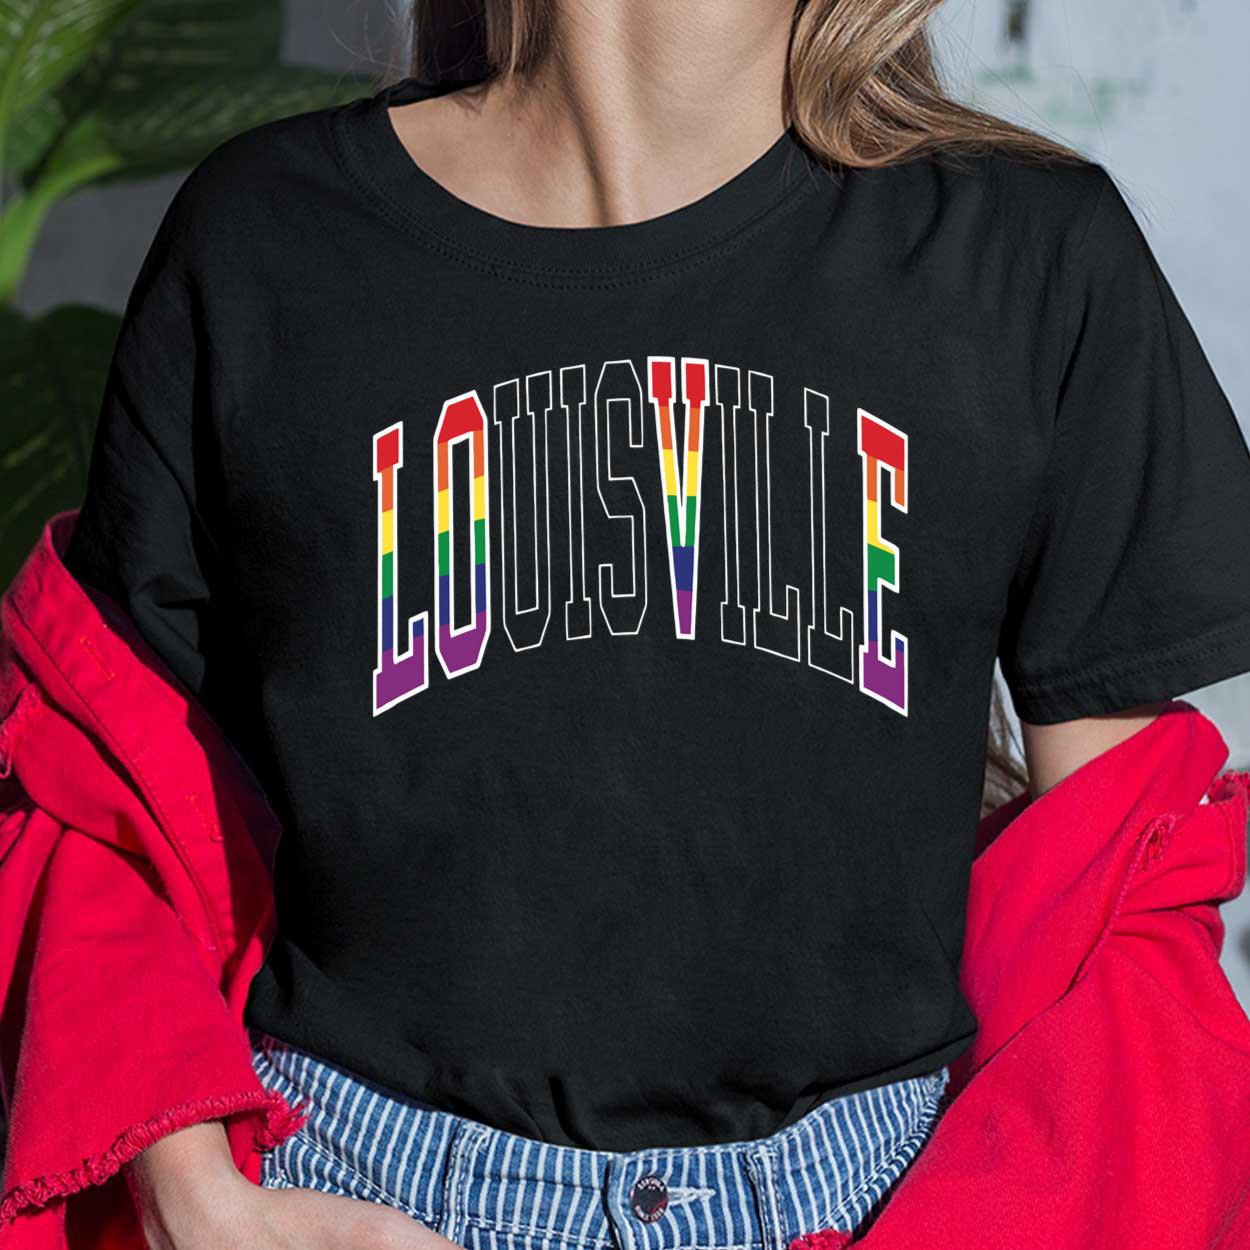 louisville sweatshirt womens